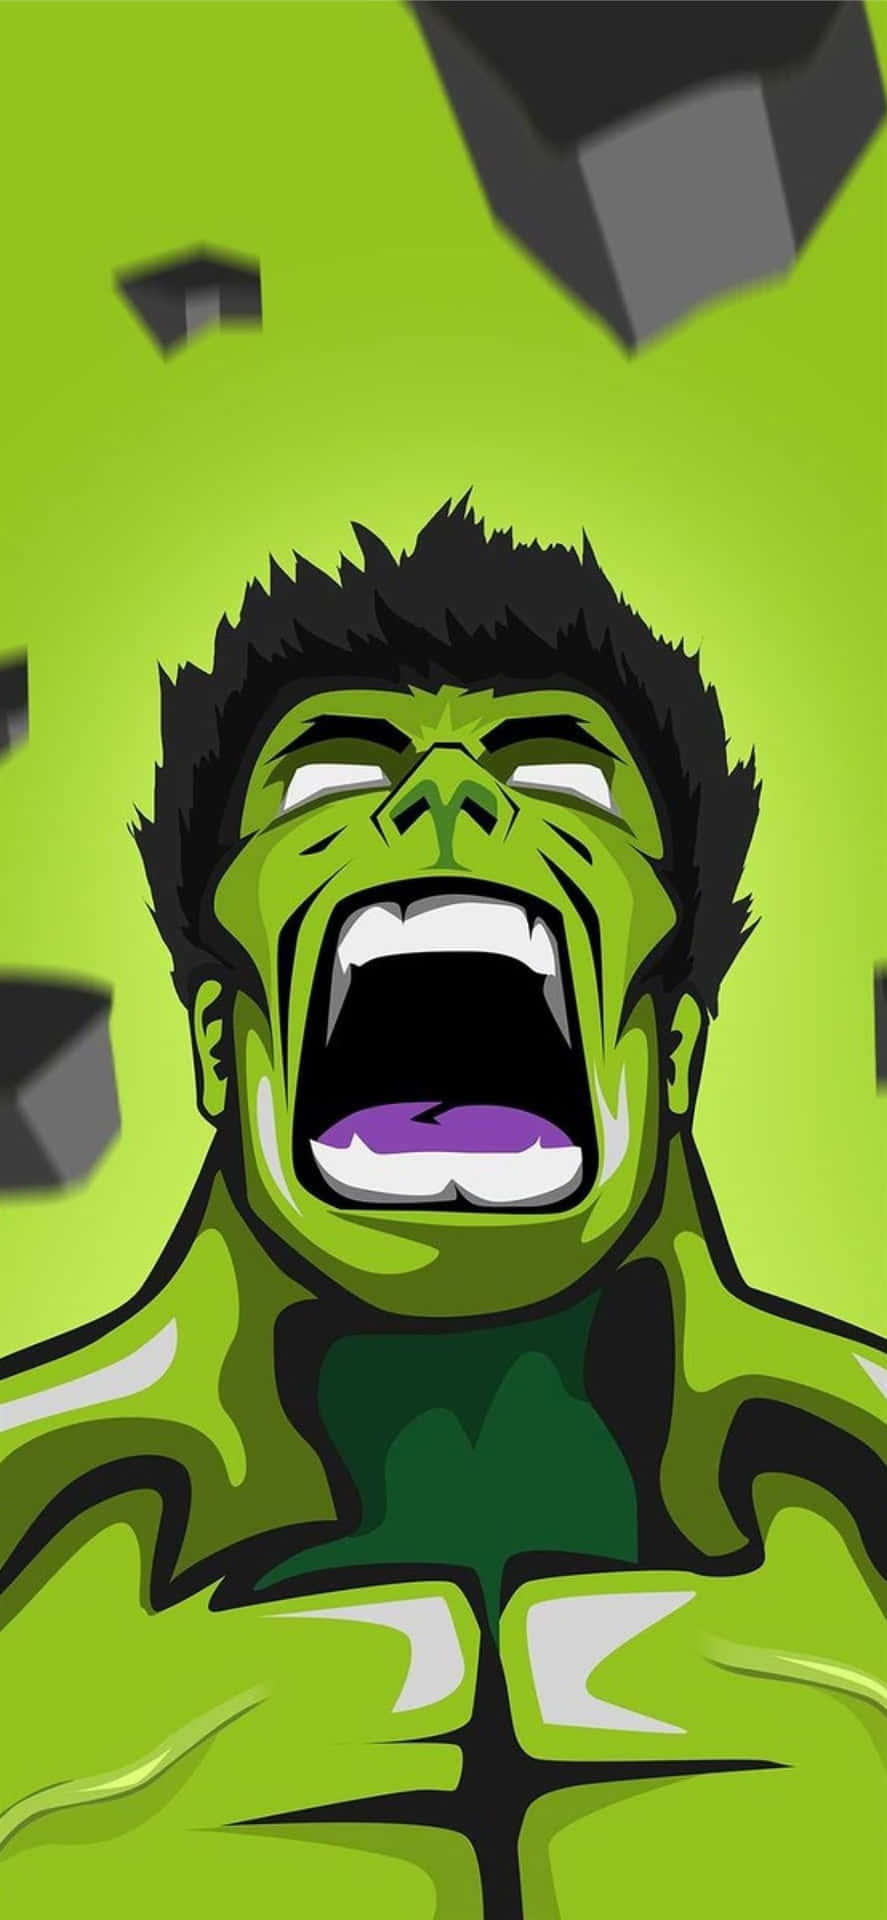 Derunglaubliche Hulk Entfesselt Seine Unglaubliche Wut.